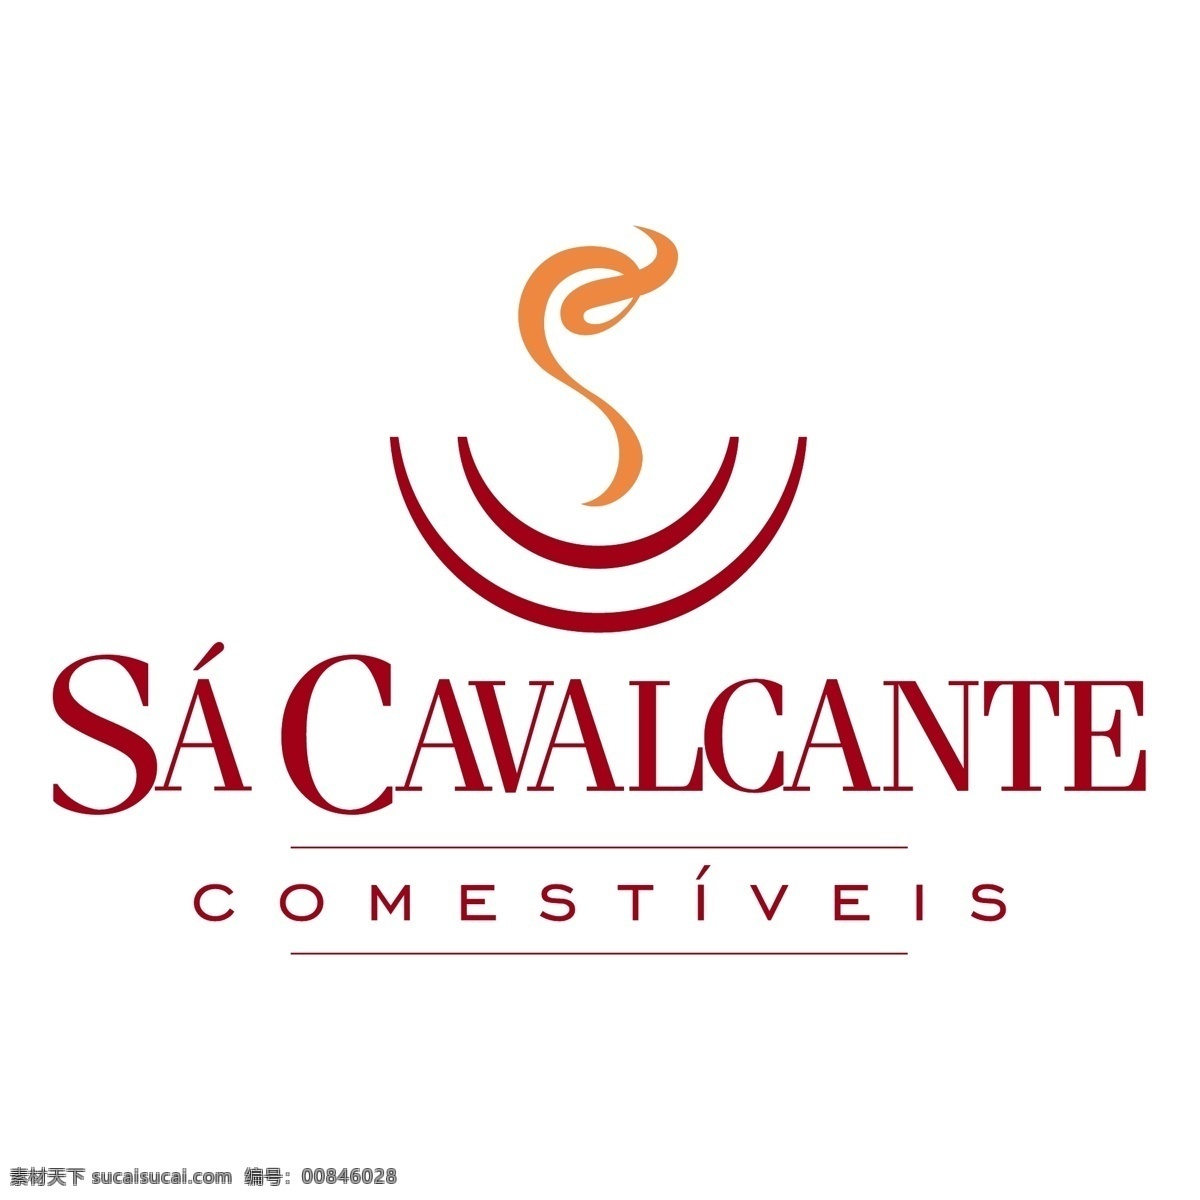 sa 卡瓦尔坎蒂 comestiveis 标识 公司 免费 品牌 品牌标识 商标 矢量标志下载 免费矢量标识 矢量 psd源文件 logo设计